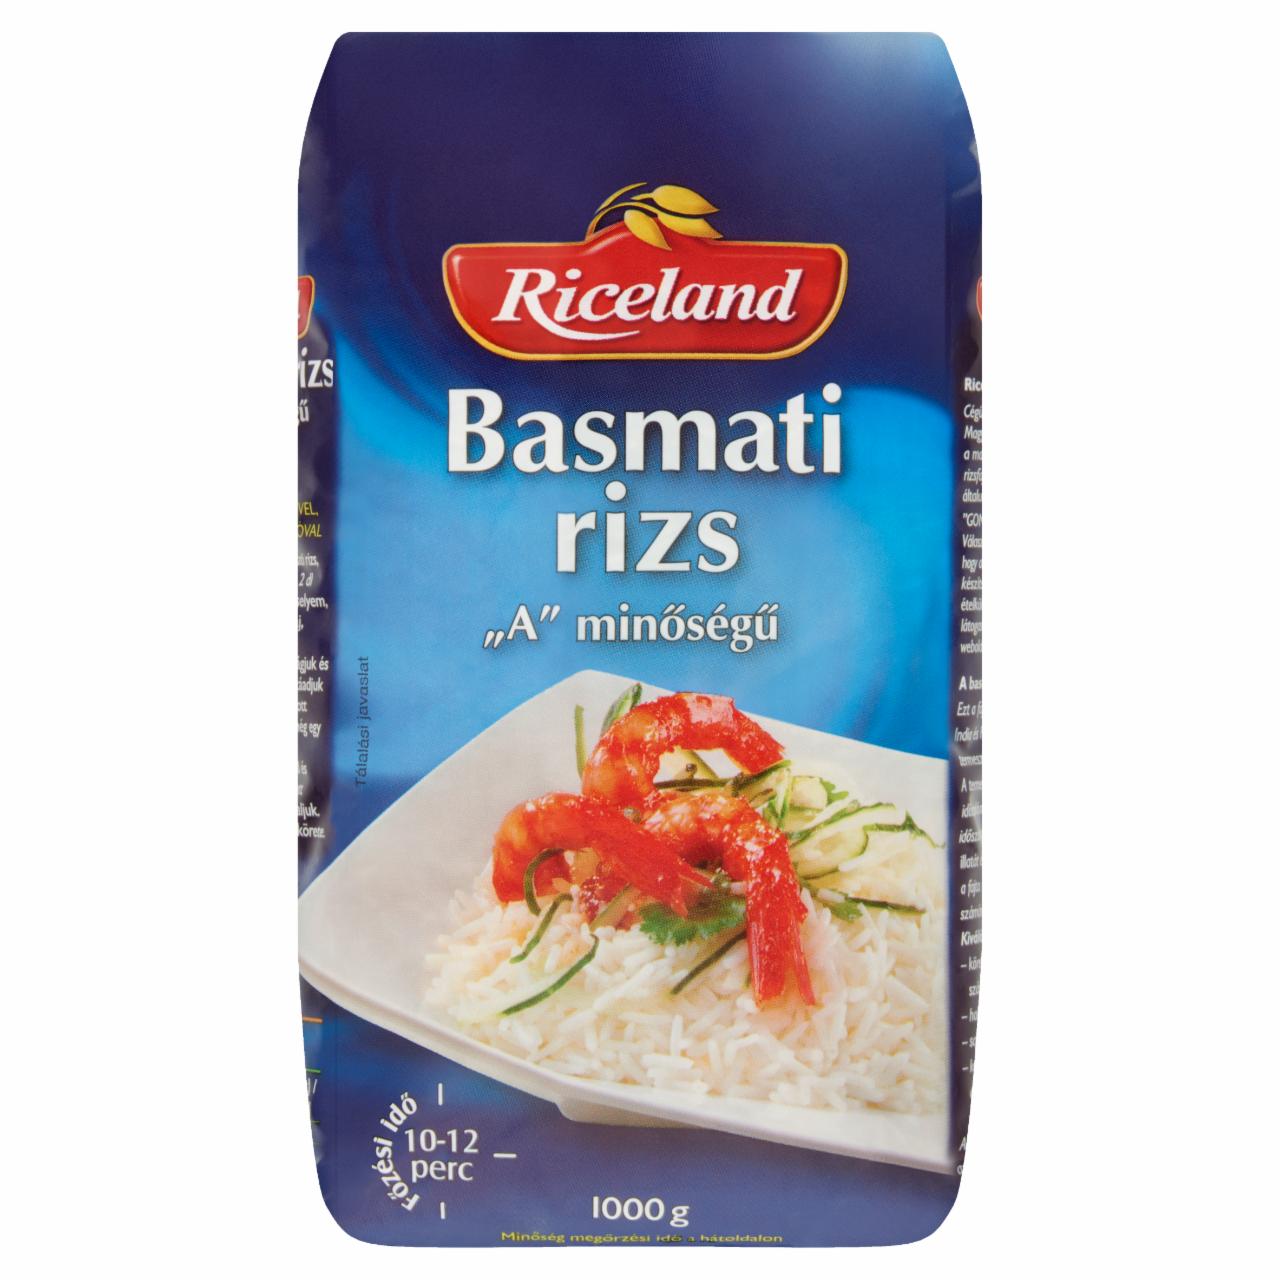 Képek - A minőségű Basmati rizs Riceland